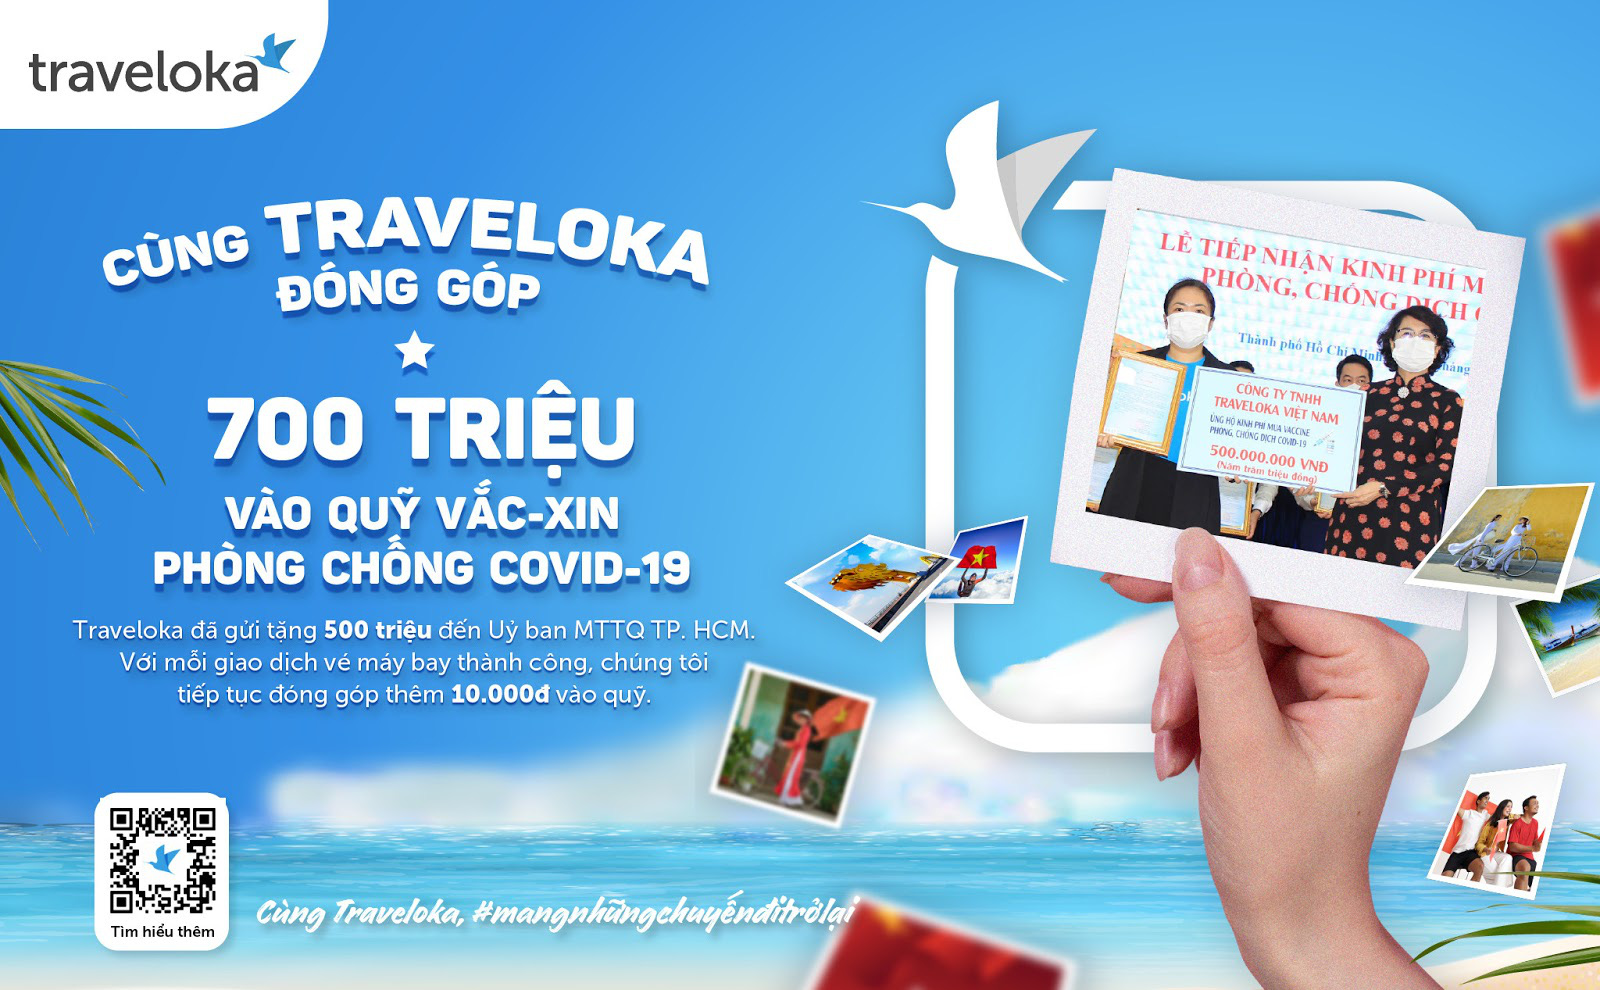 Cùng Traveloka biến mỗi chuyến bay thành một phần đóng góp chống dịch - Ảnh 3.